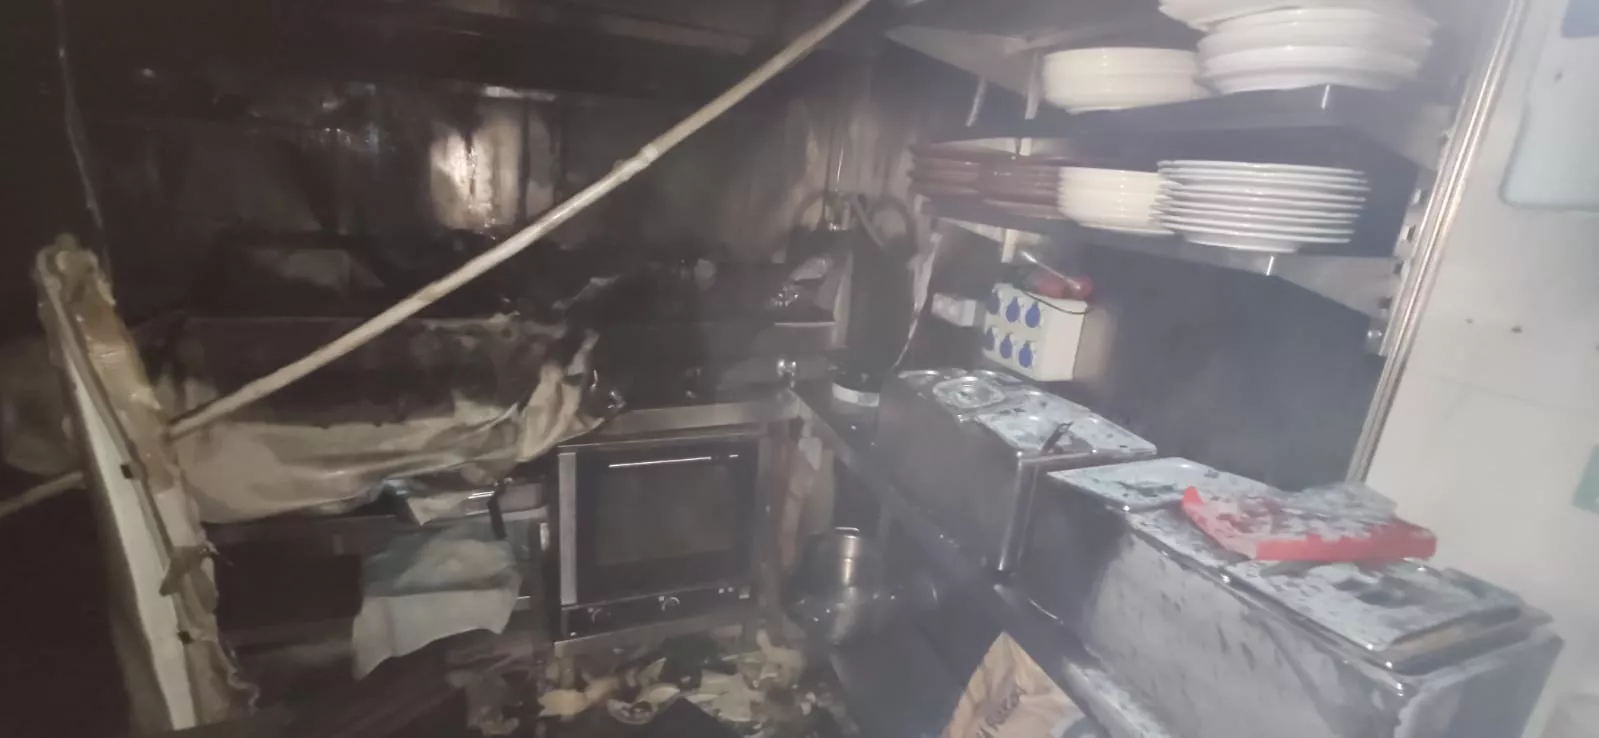 Cocina del restaurante Las Cuadras tras el incendio